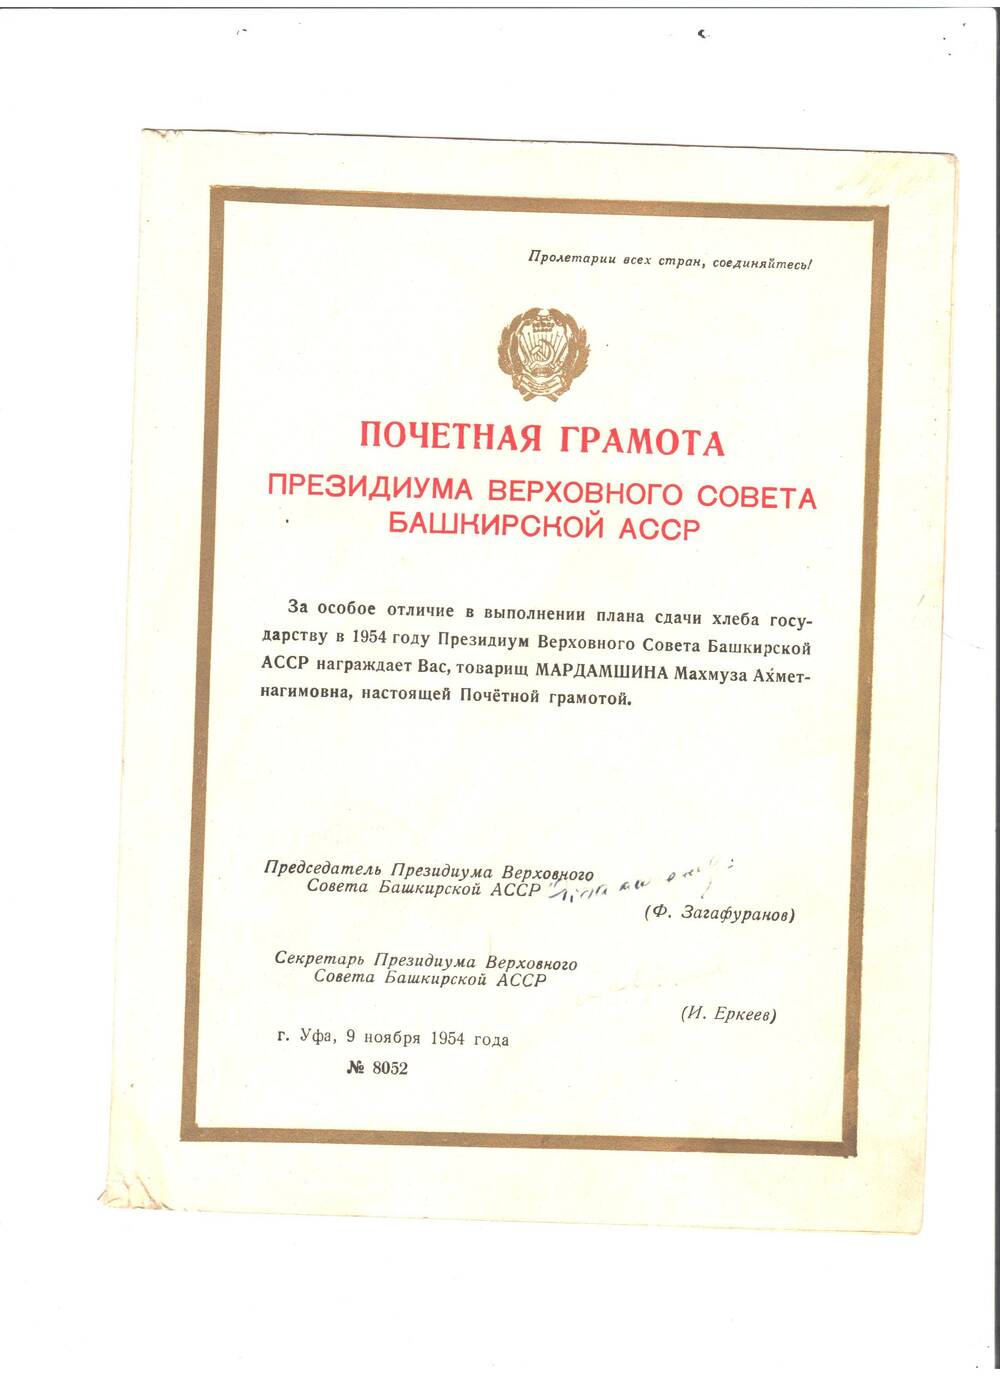 Почетная грамота Президиума Верховного Совета БАССР от 09. 11. 1954 Мардамшиной Махмузе, 1-му (?)  председателю к-за им. М.Гафури